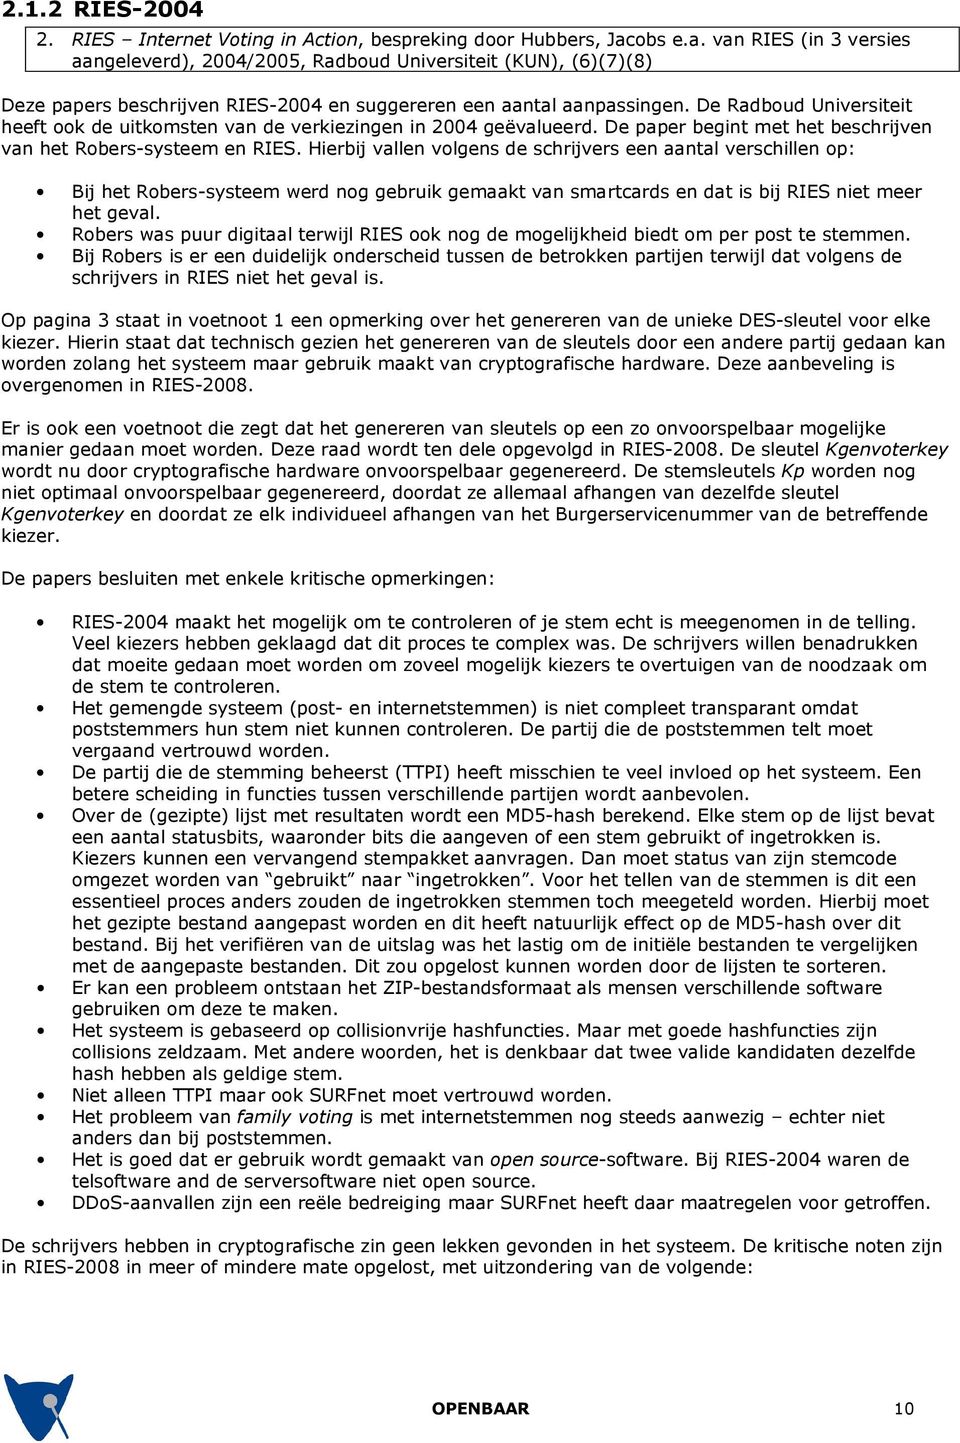 De Radboud Universiteit heeft ook de uitkomsten van de verkiezingen in 2004 geëvalueerd. De paper begint met het beschrijven van het Robers-systeem en RIES.